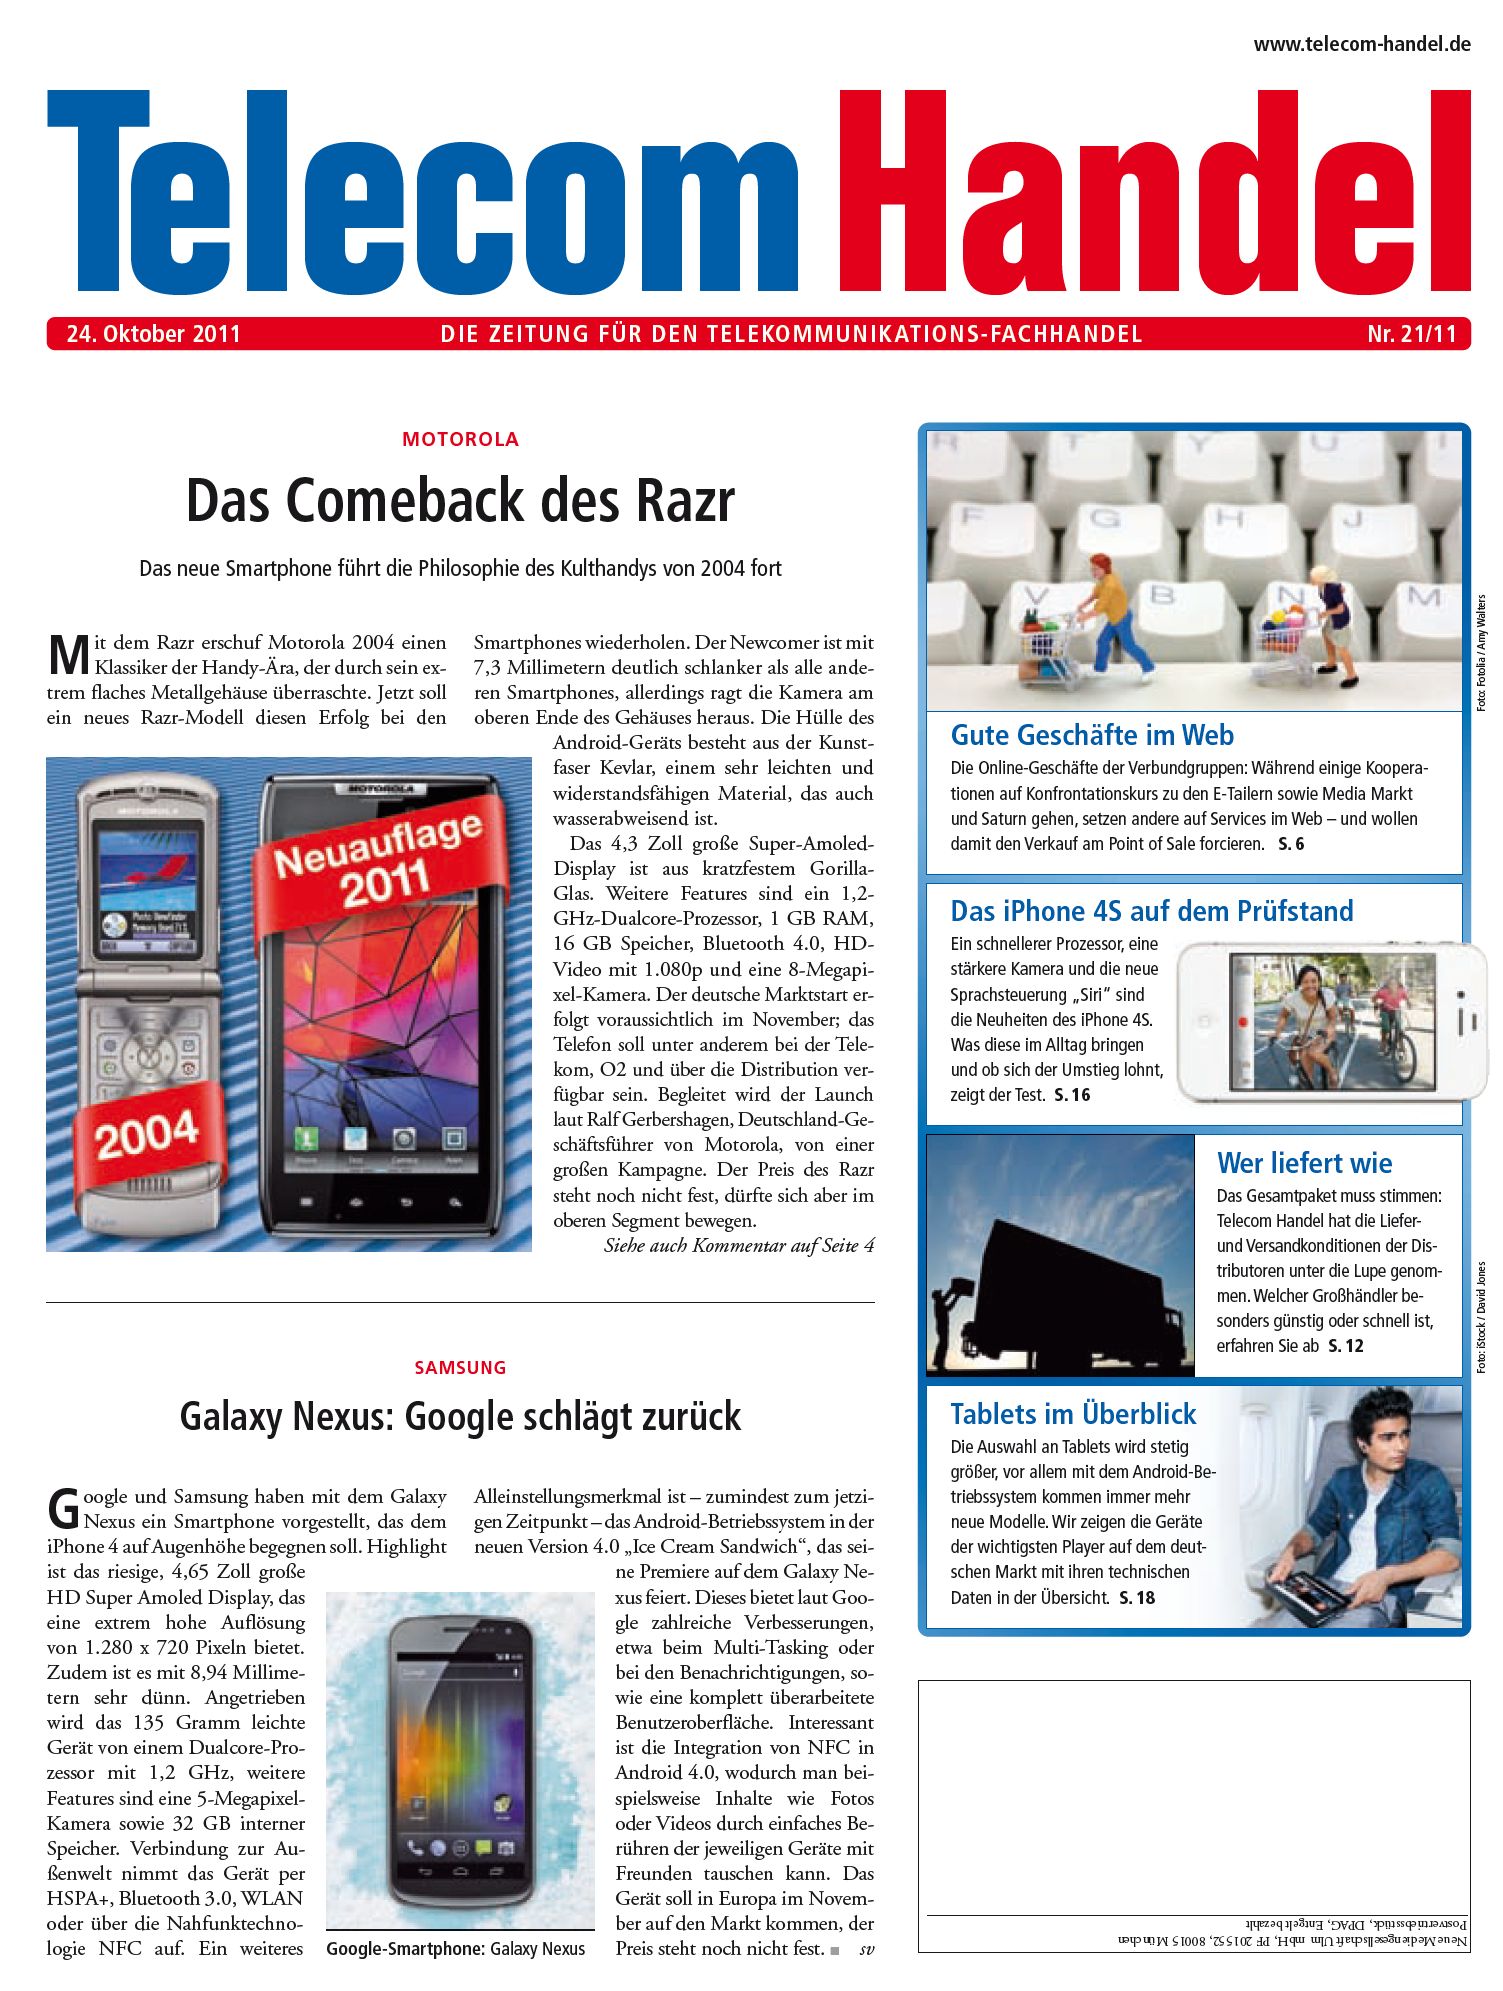 Telecom Handel Ausgabe 21/2011